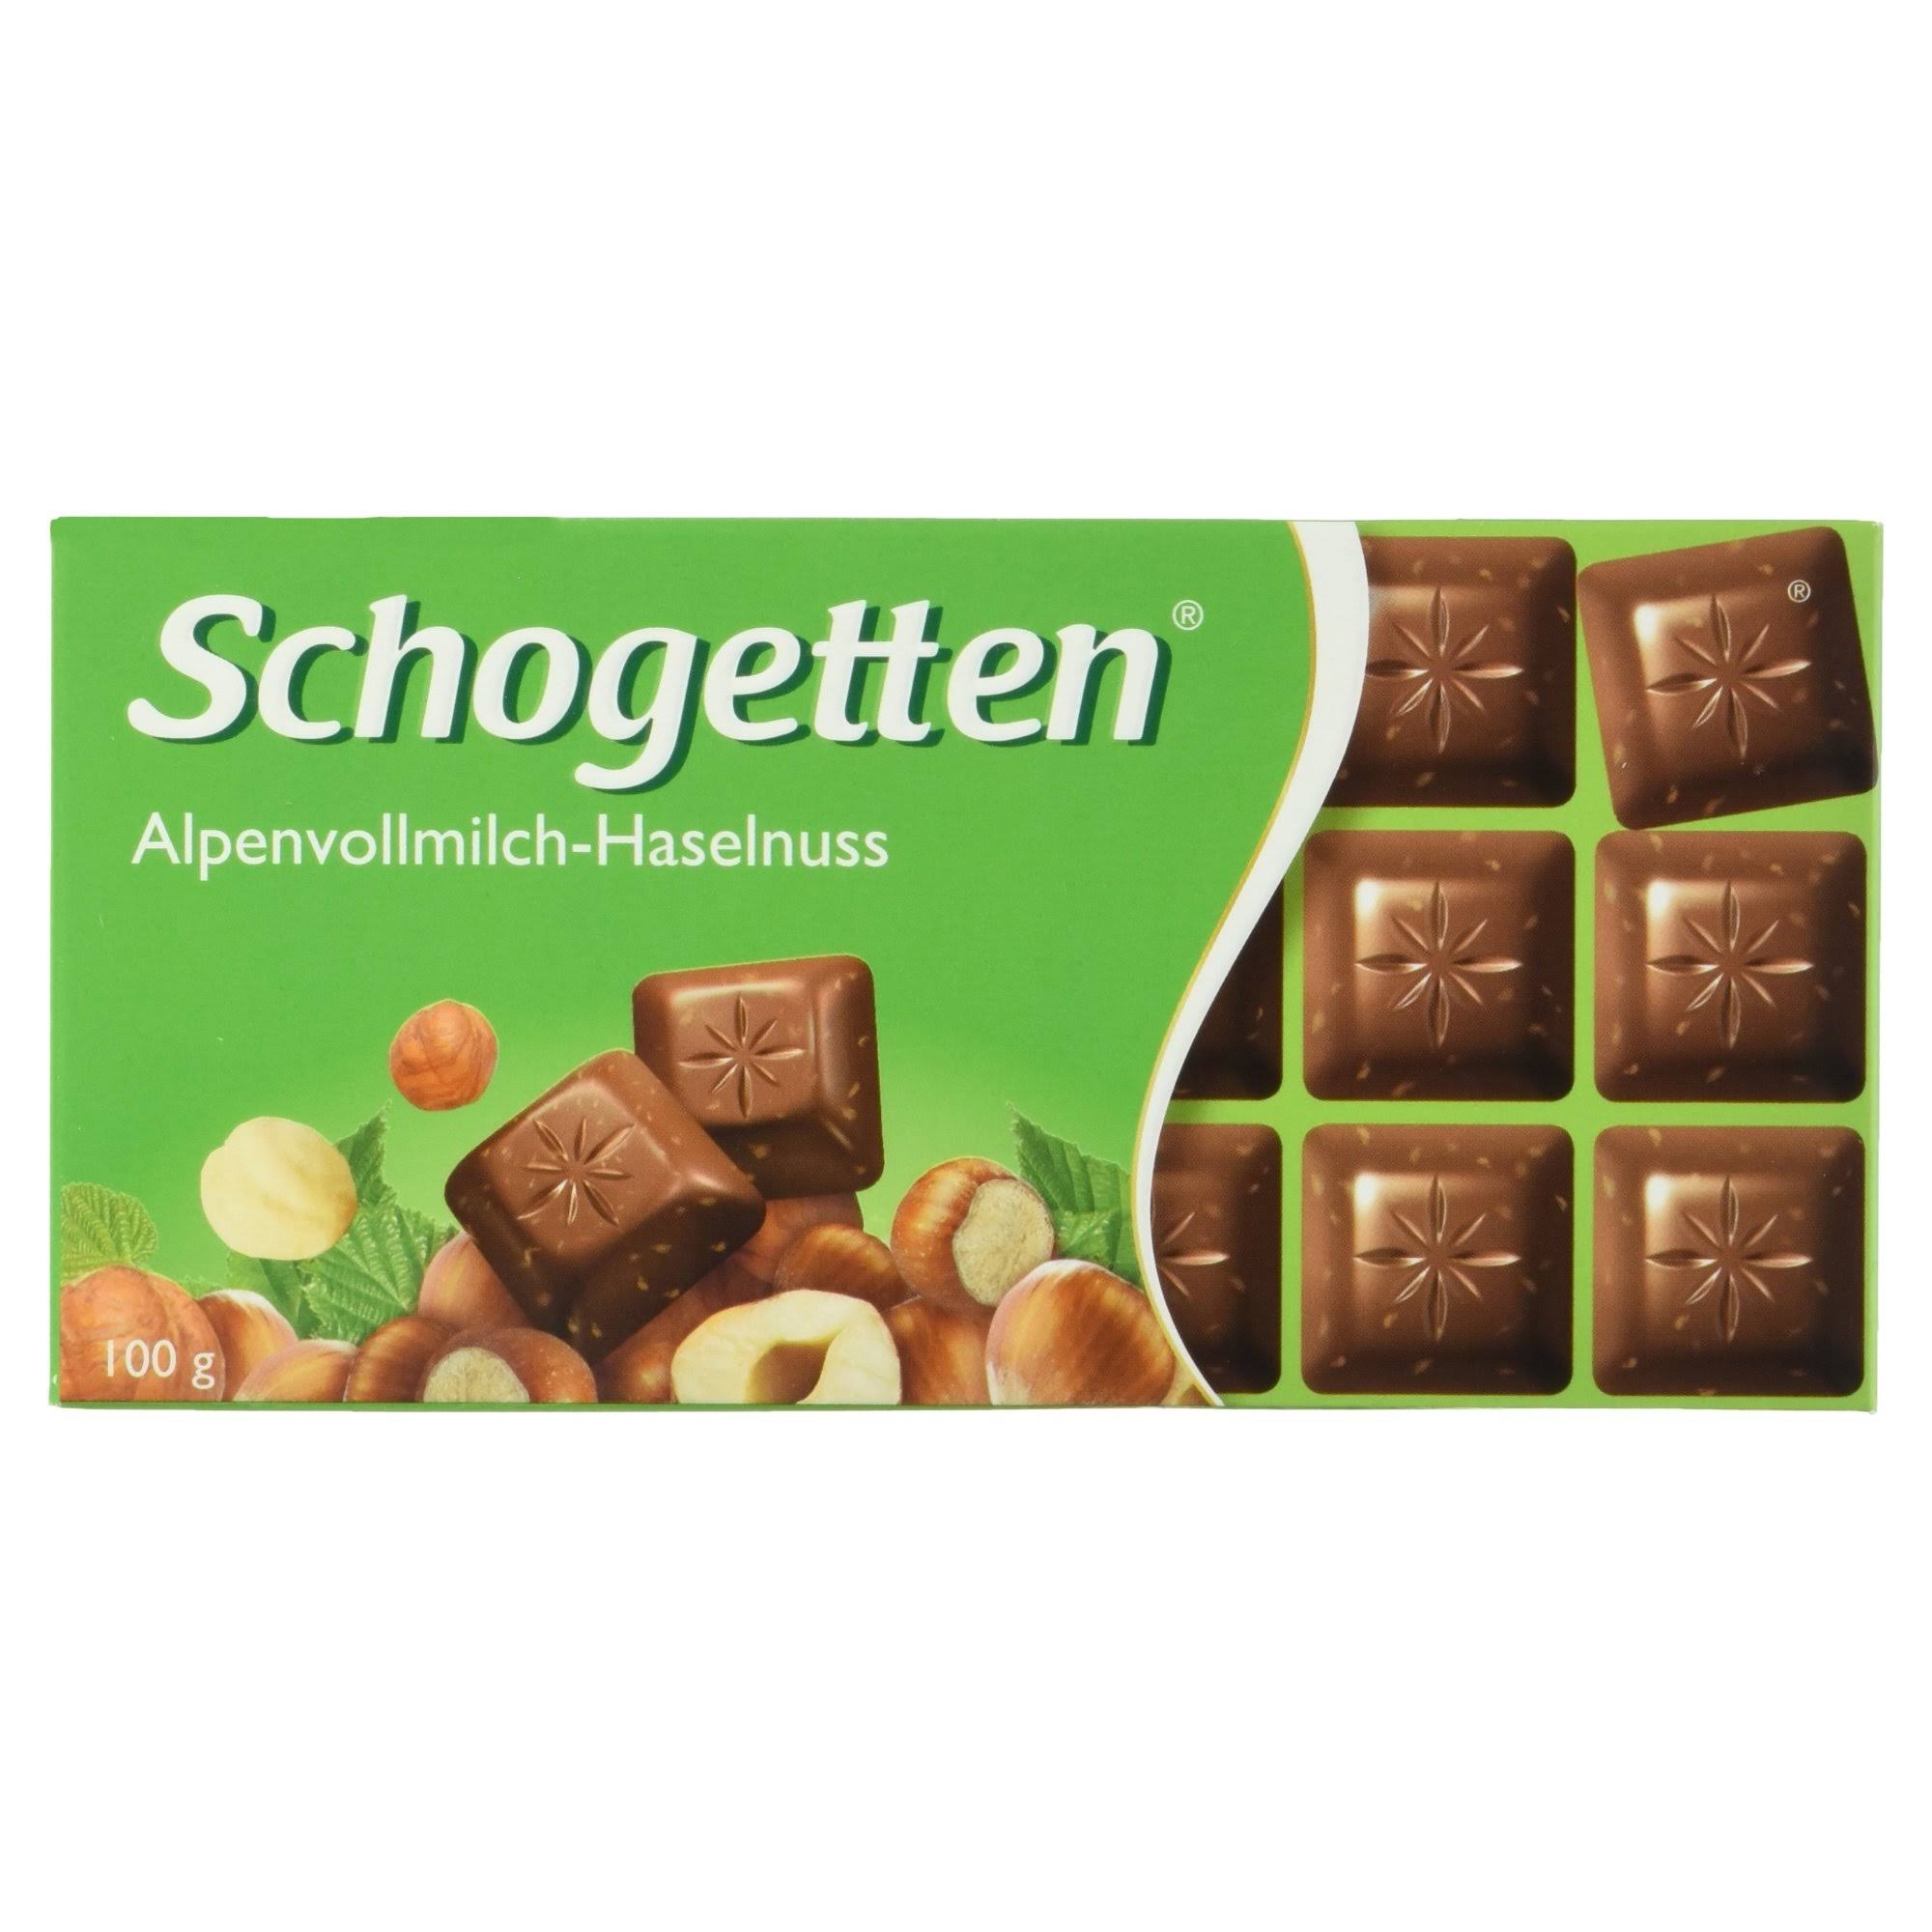 Schogetten Alpine Milk Hazelnut Chocolate Bar 100g (15-Pack)